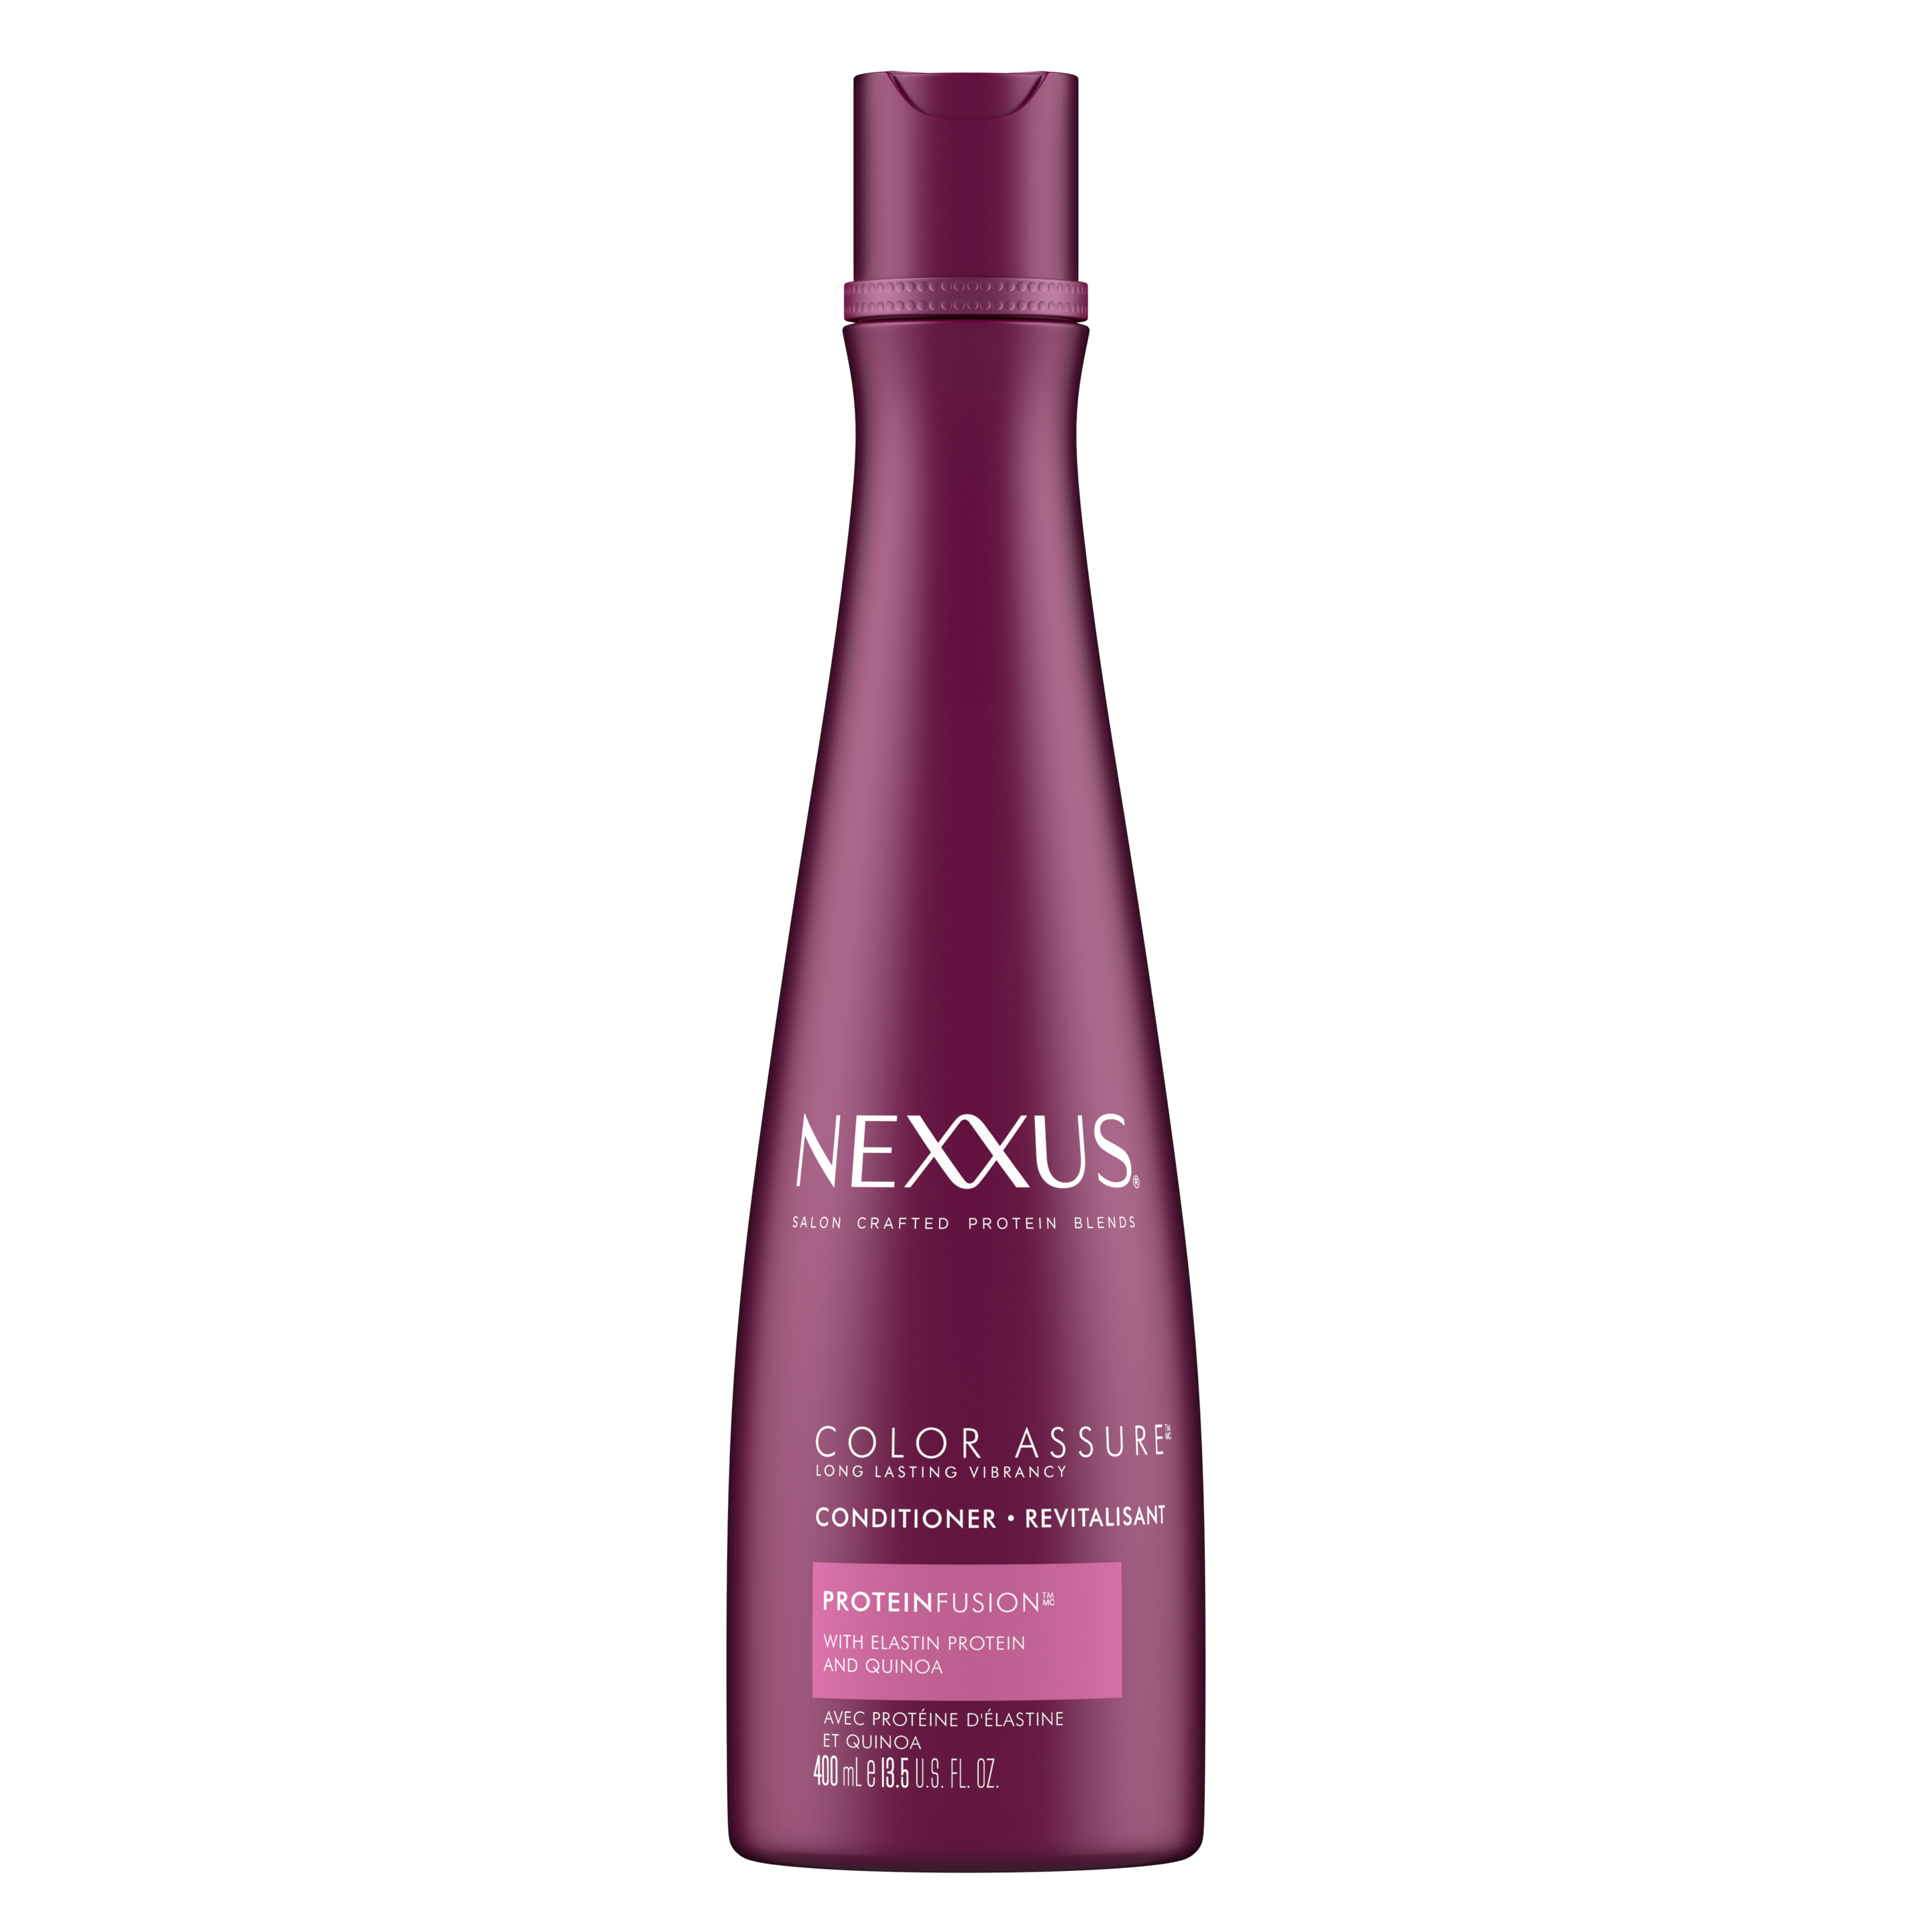 Face de l'emballage du revitalisant color assure pour cheveux colorés de Nexxus 400 ml